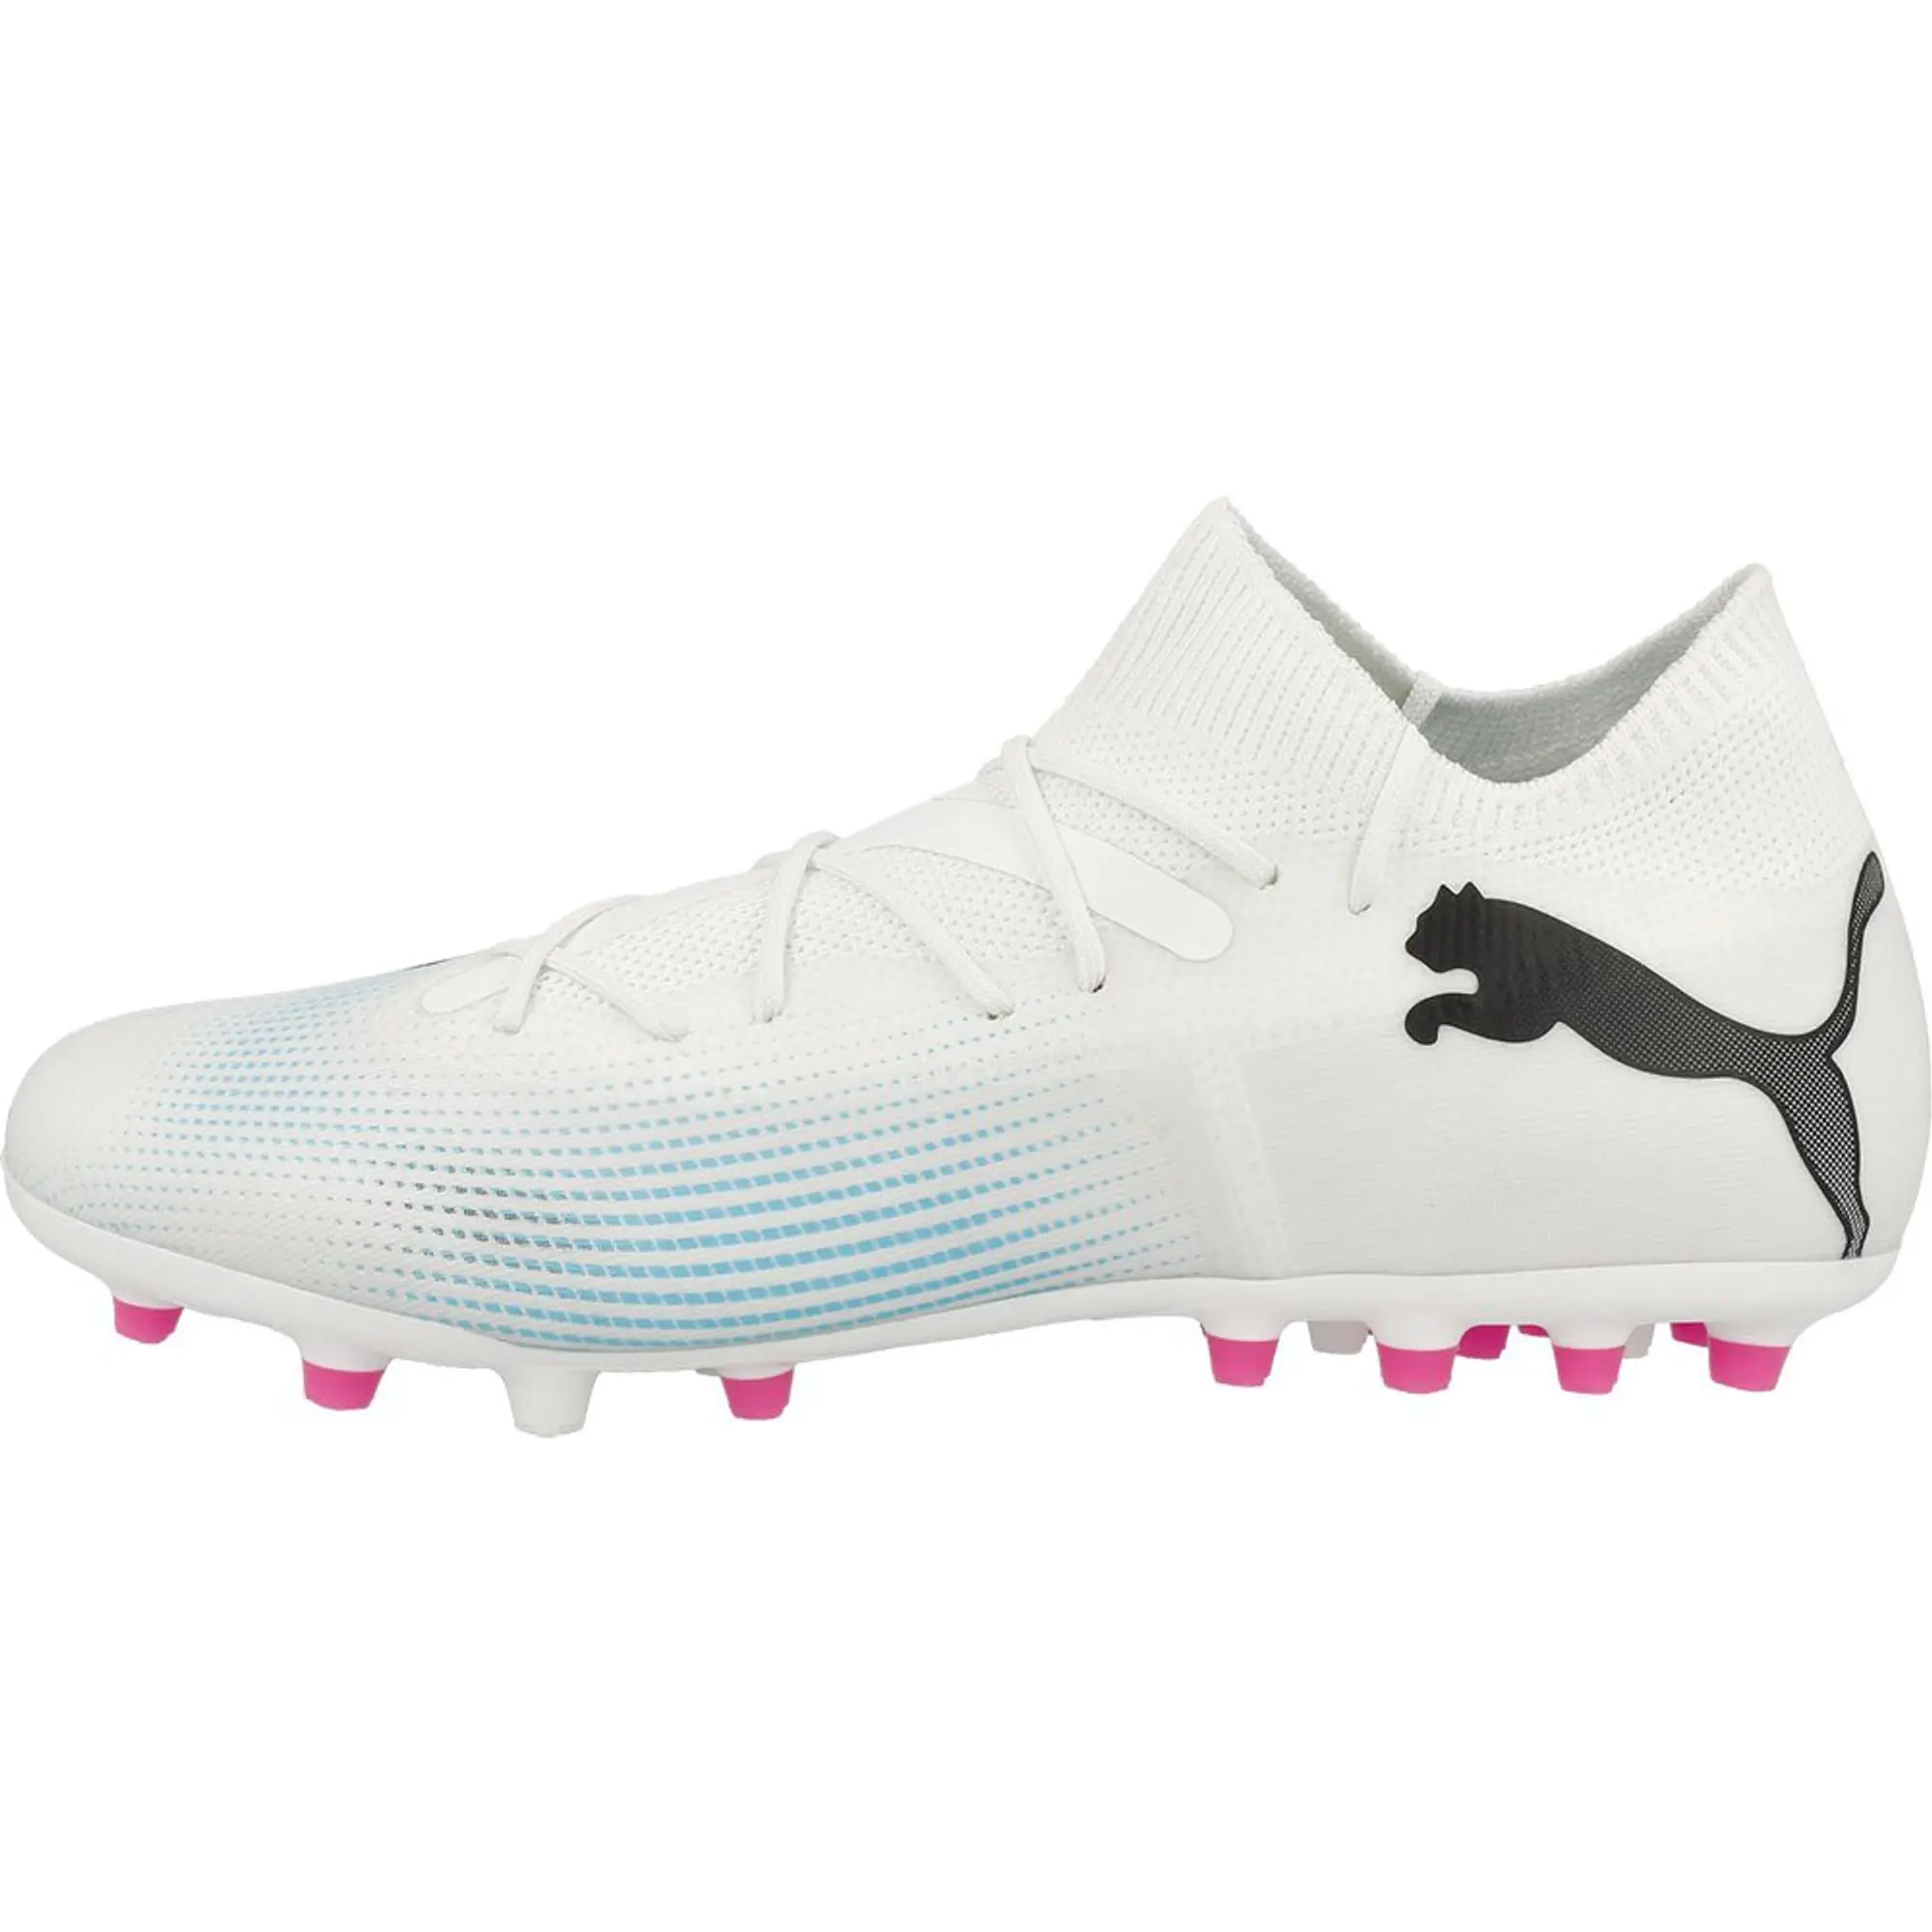 Puma Future 7 Match Mg Football Boots  - White